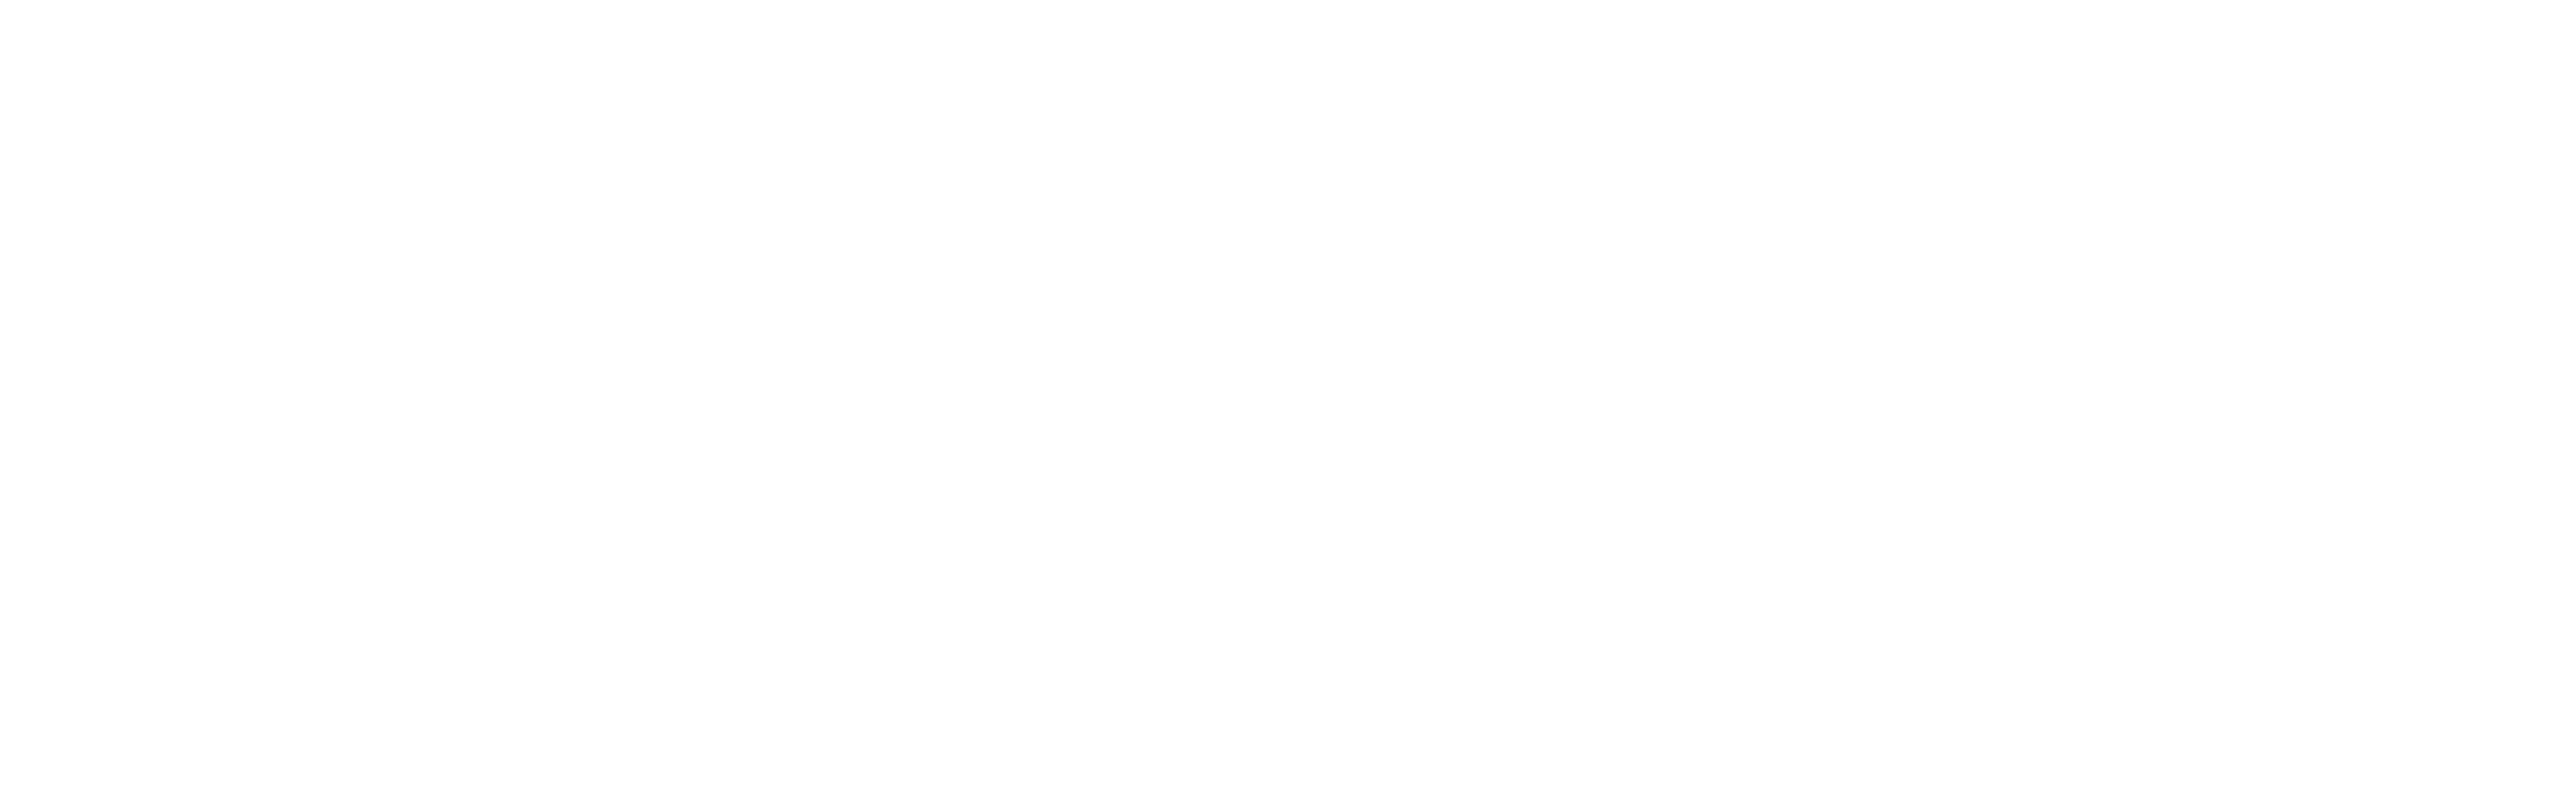 Black Oak branding in all white